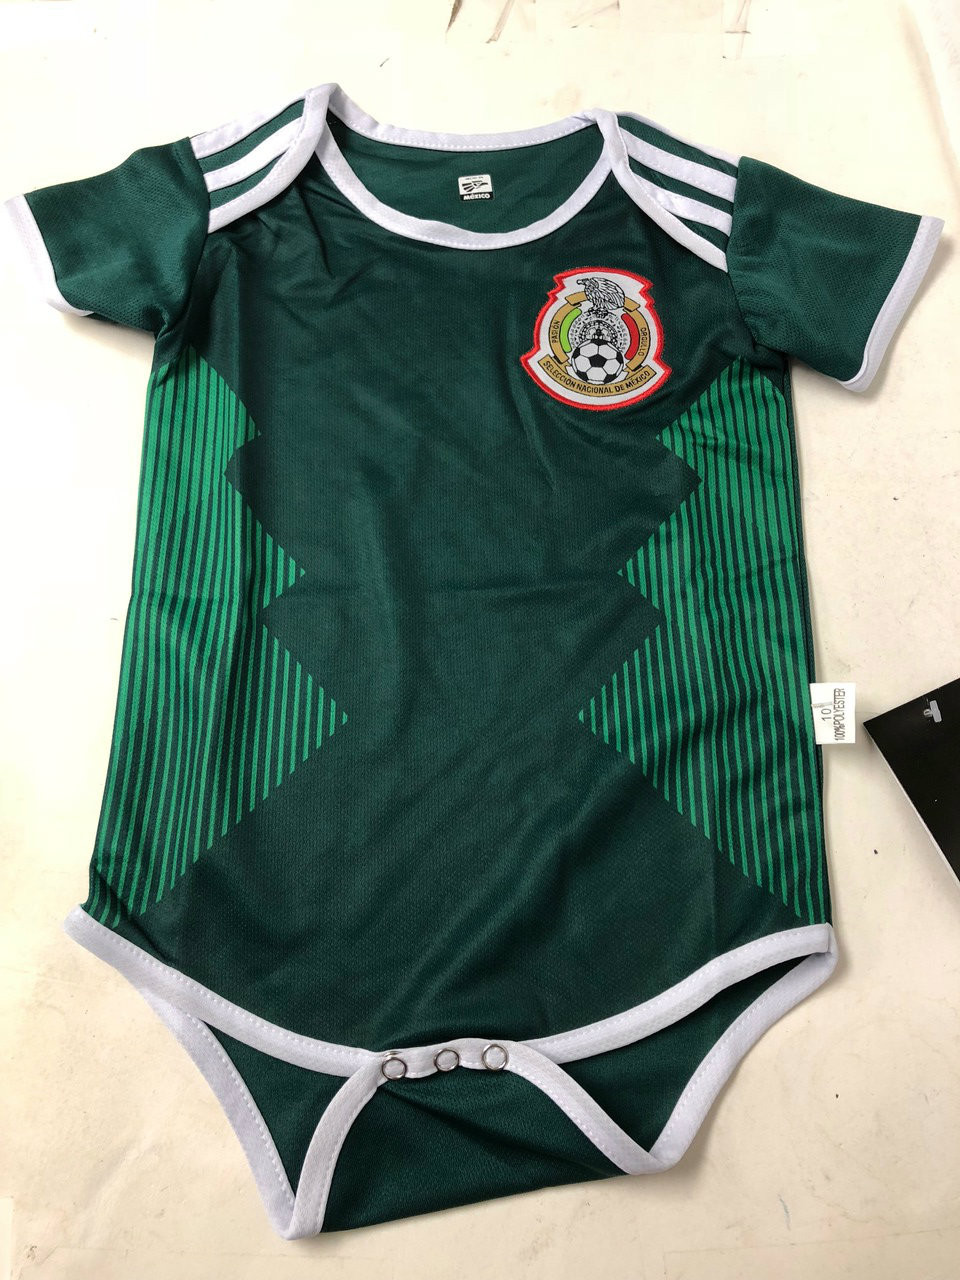 baby soccer jerseys mexico